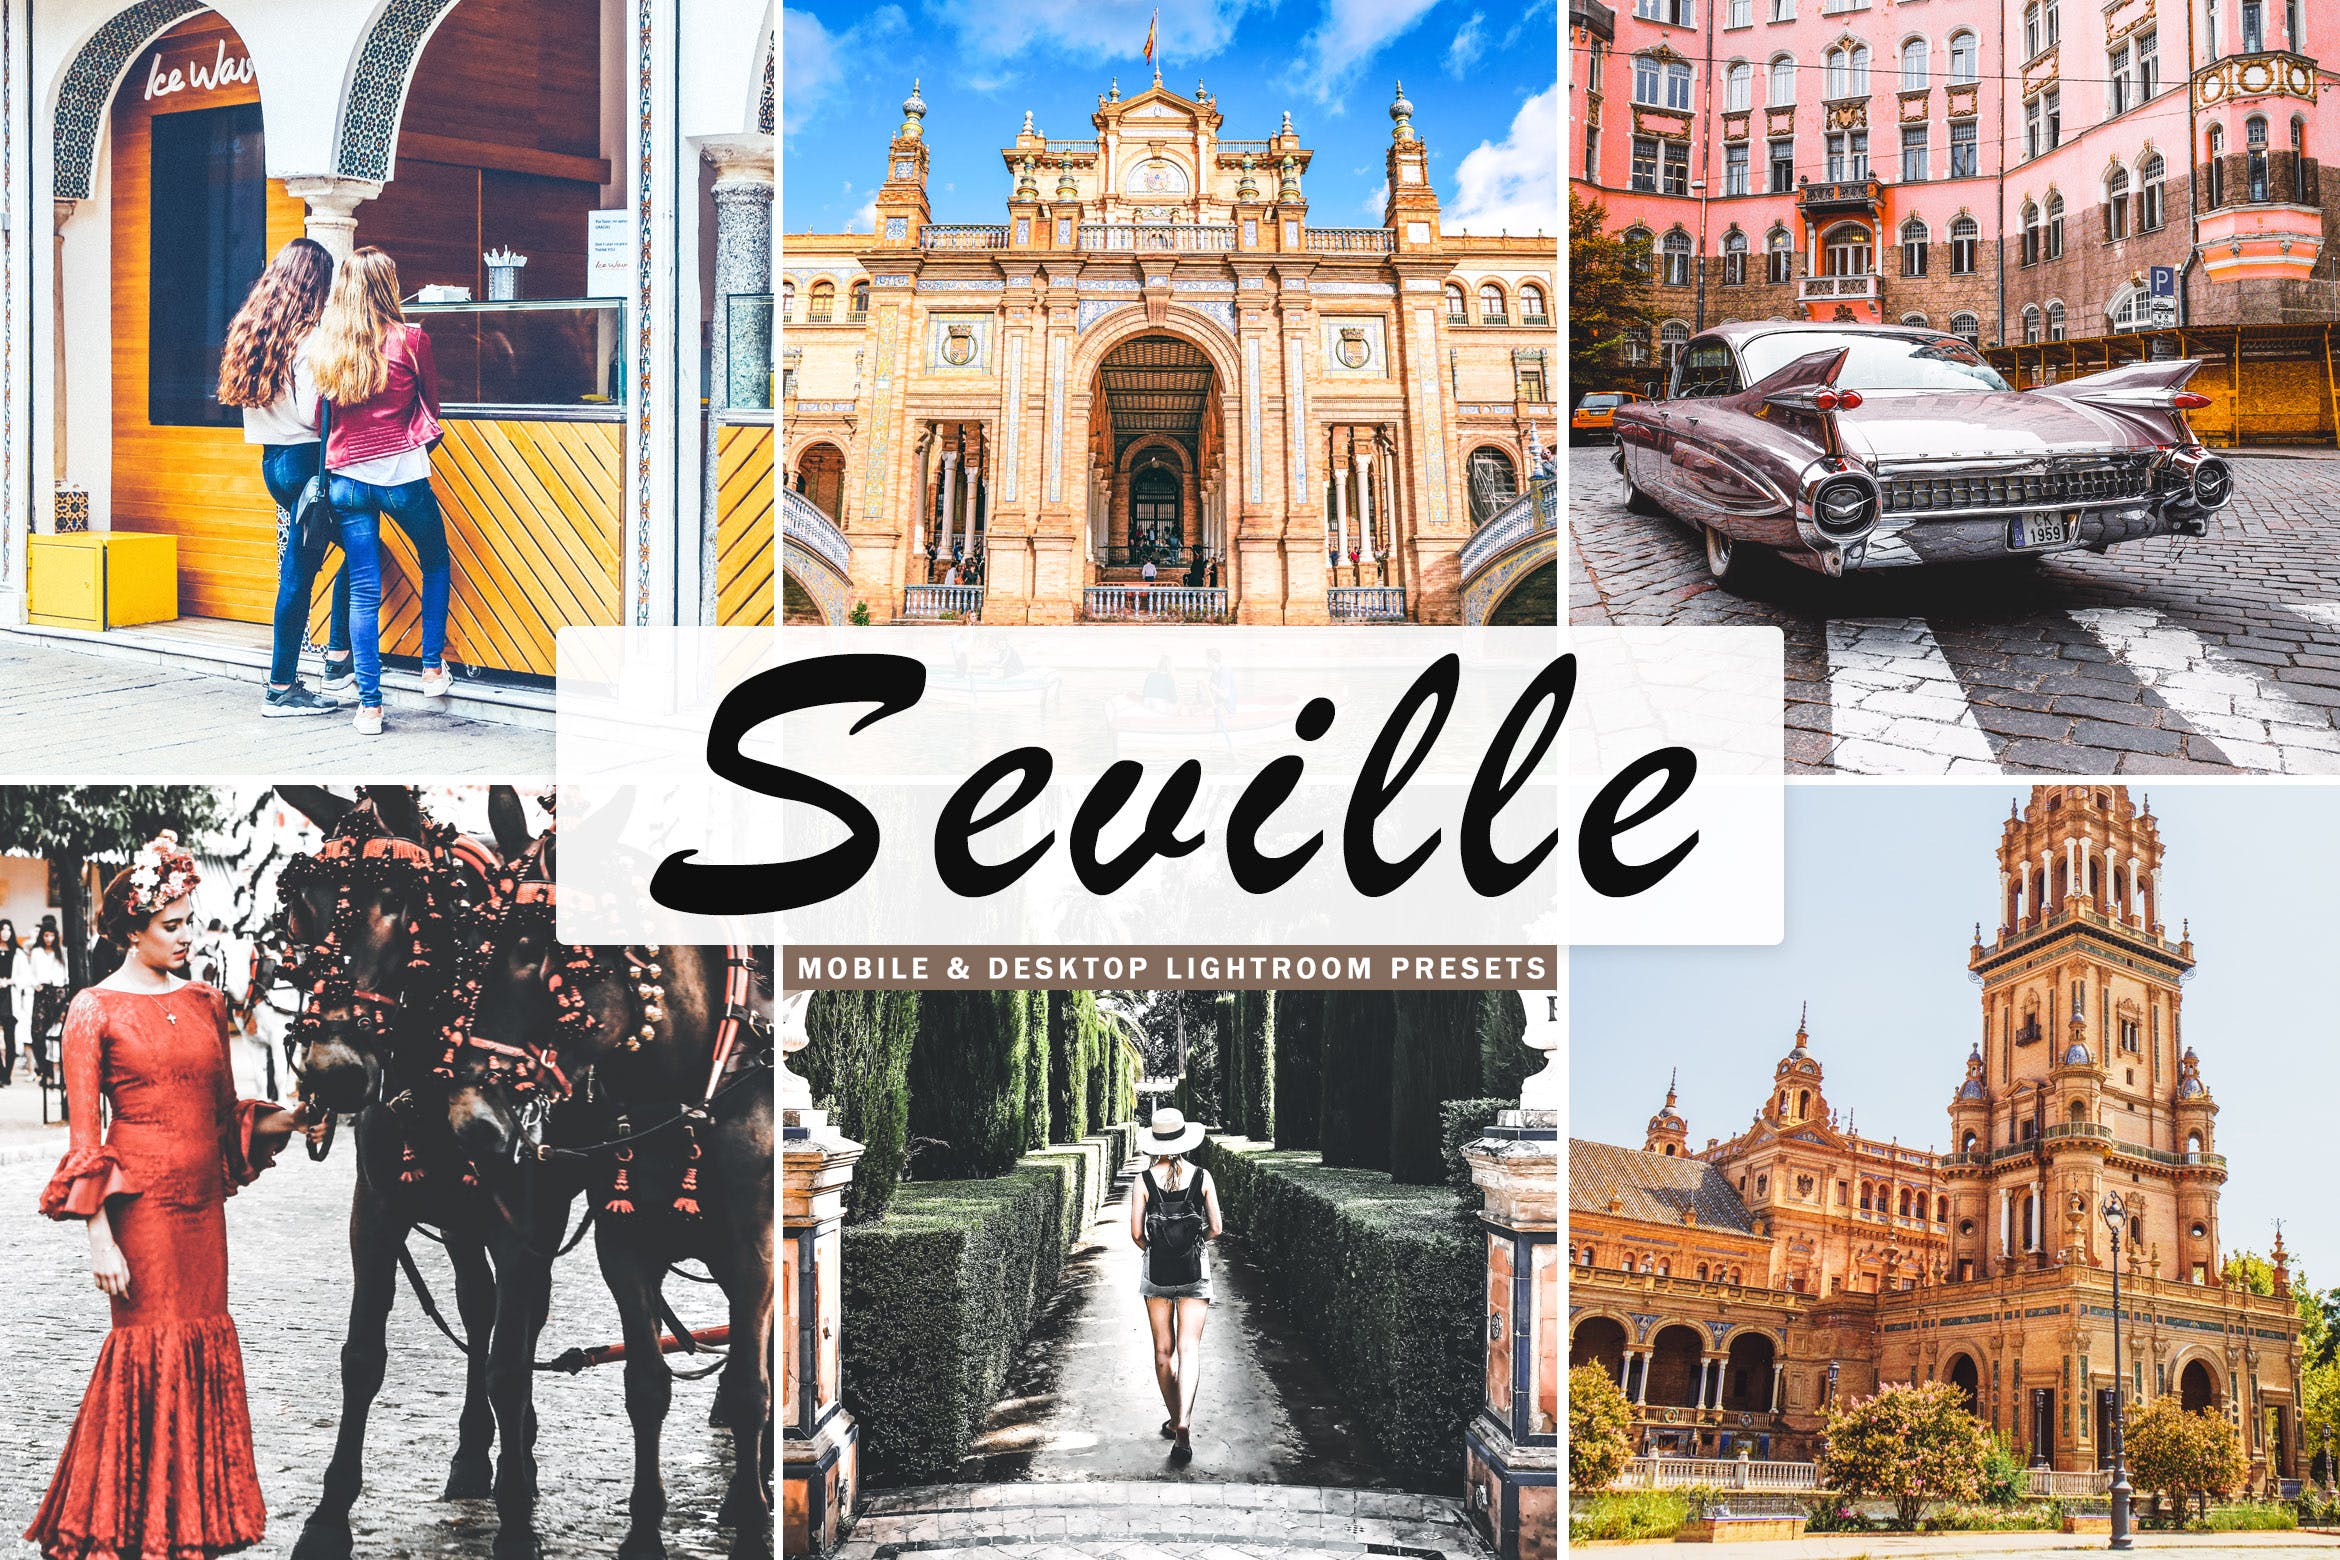 塞维利亚旅行摄影后期加工蚂蚁素材精选LR预设 Seville Mobile & Desktop Lightroom Presets插图